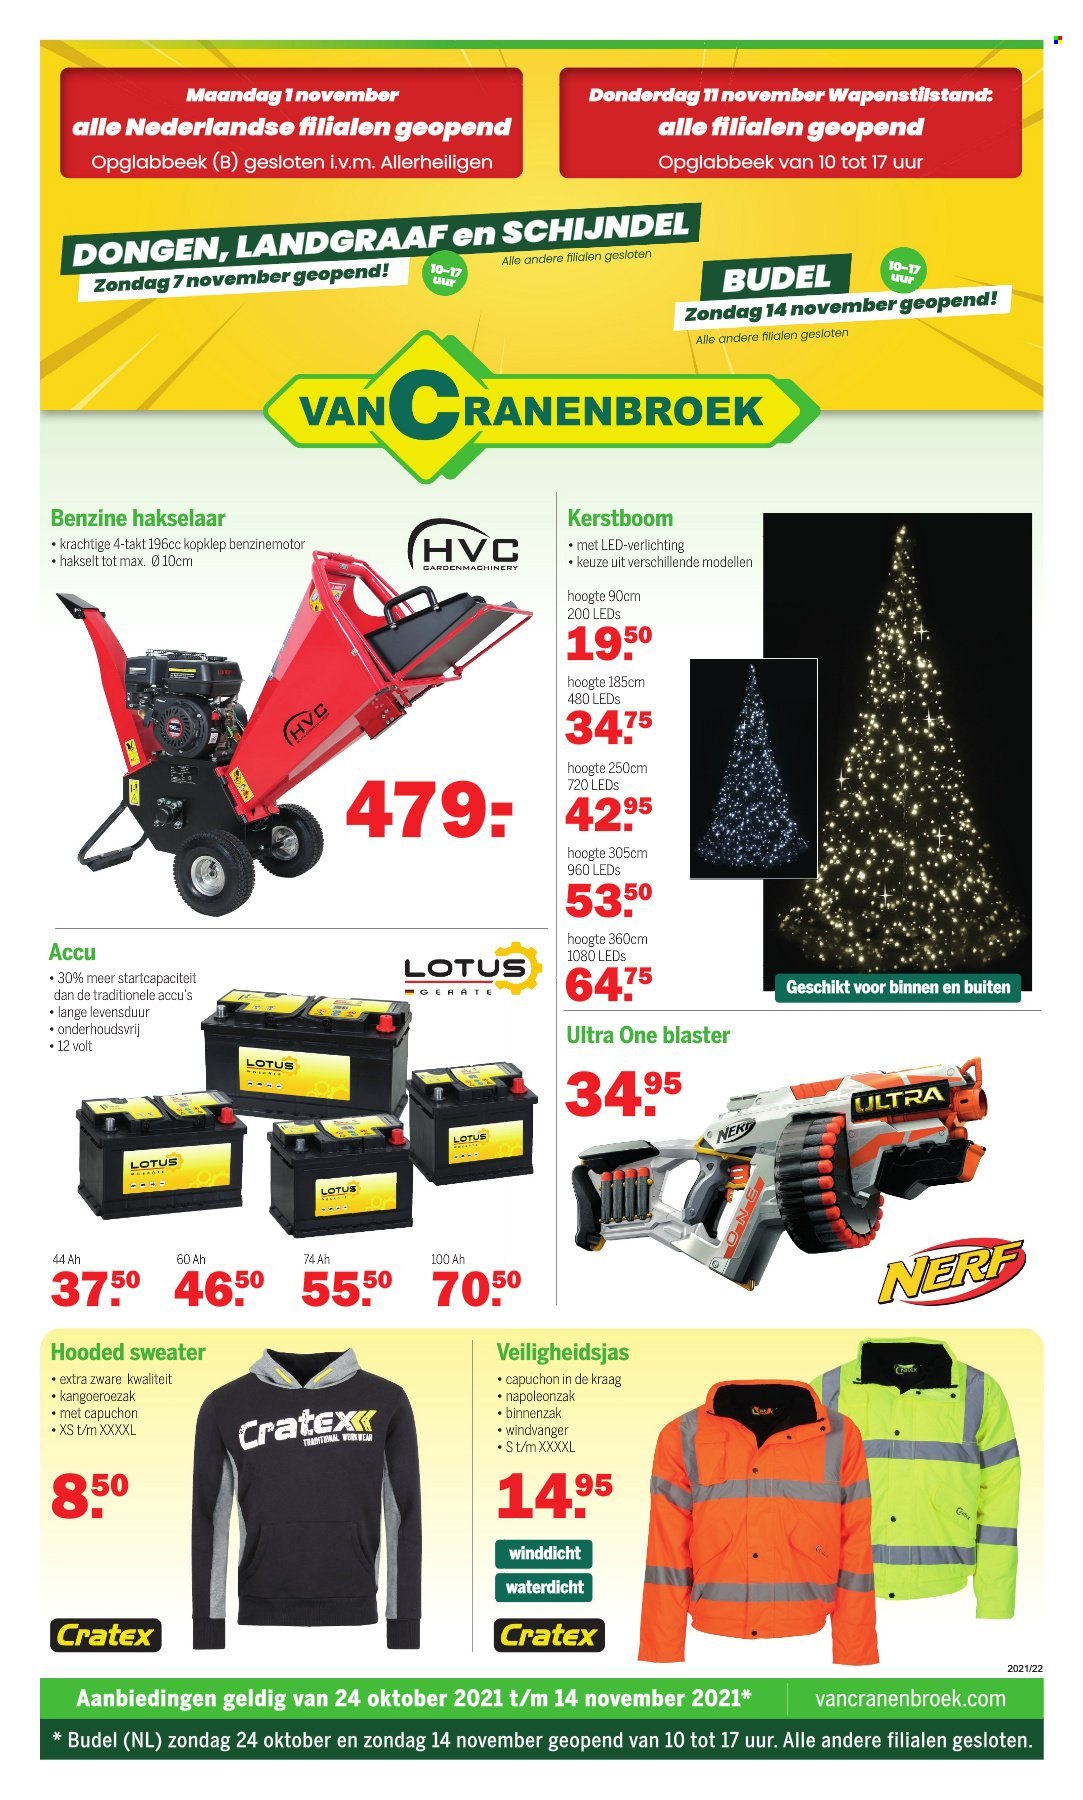 thumbnail - Van Cranenbroek-aanbieding - 24/10/2021 - 14/11/2021 -  producten in de aanbieding - kerstboom, Blaster, Nerf, verlichting. Pagina 1.